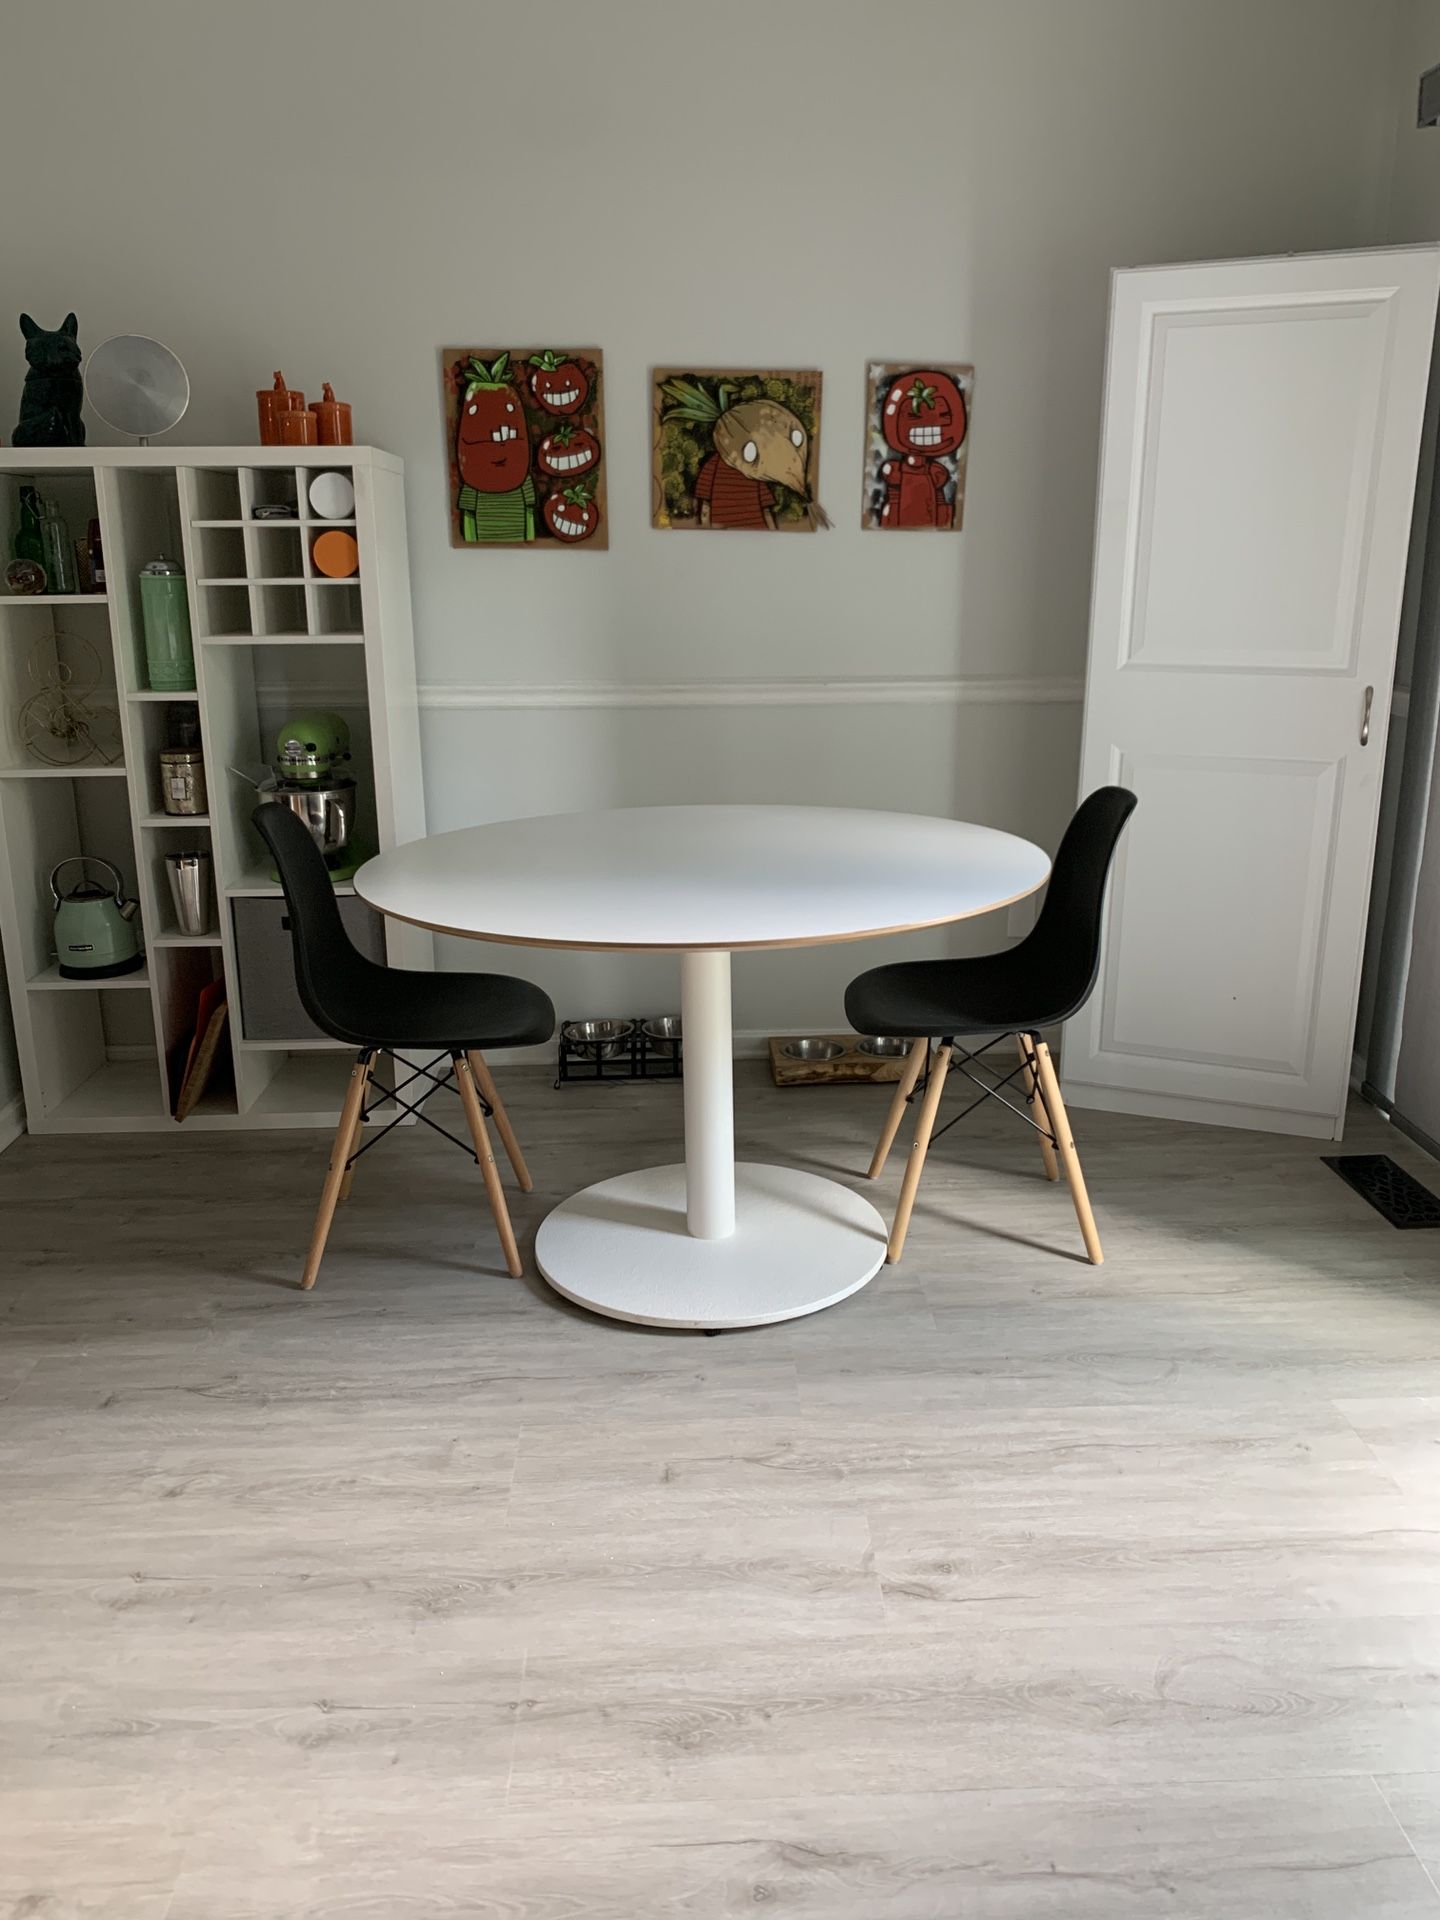 Round kitchen table - 46.5”